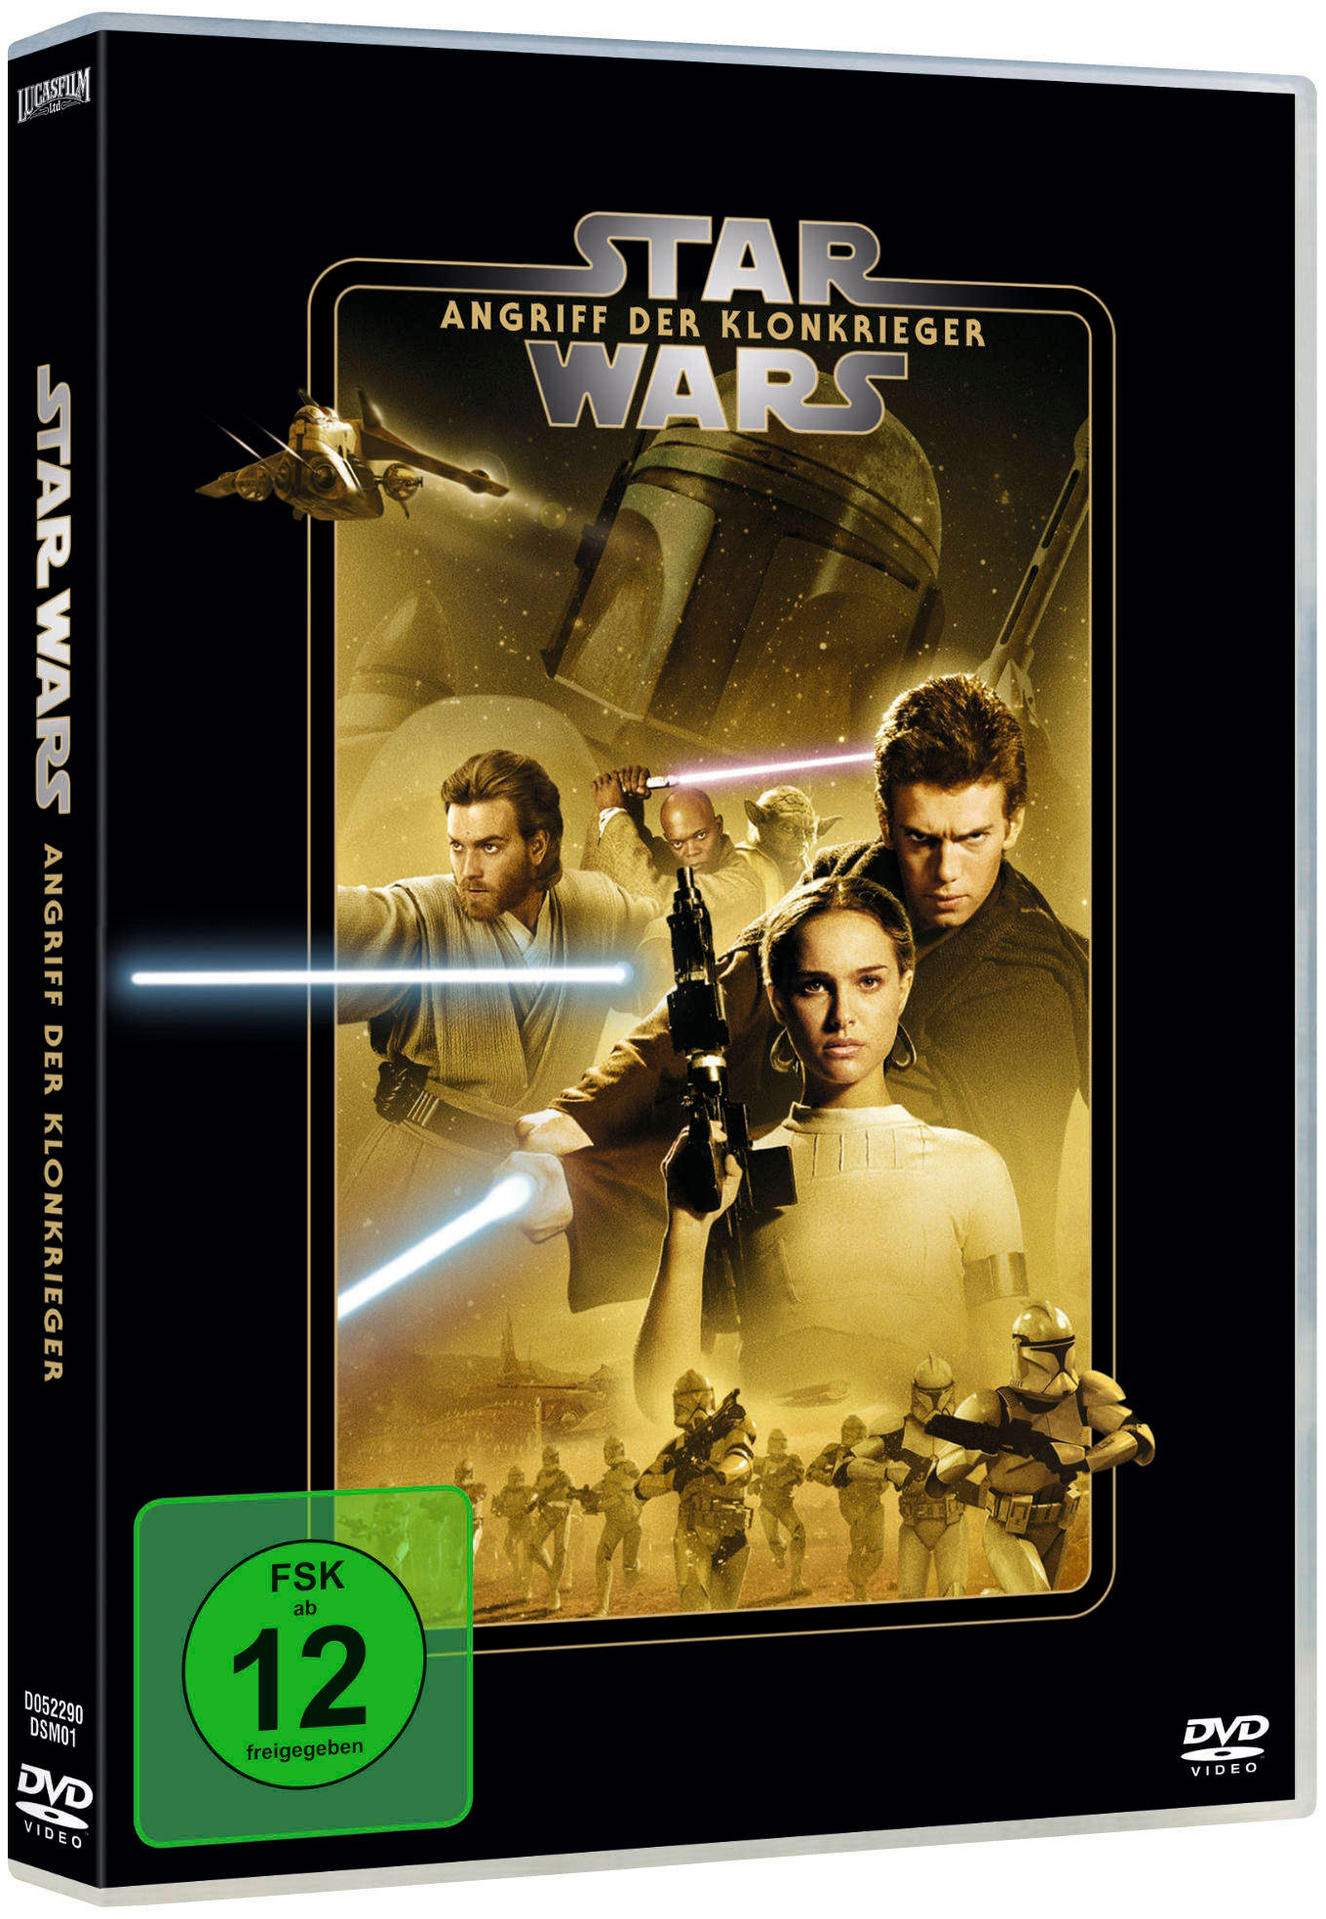 STAR WARS DER KLONKRIEGER ANGRIFF II: DVD EP